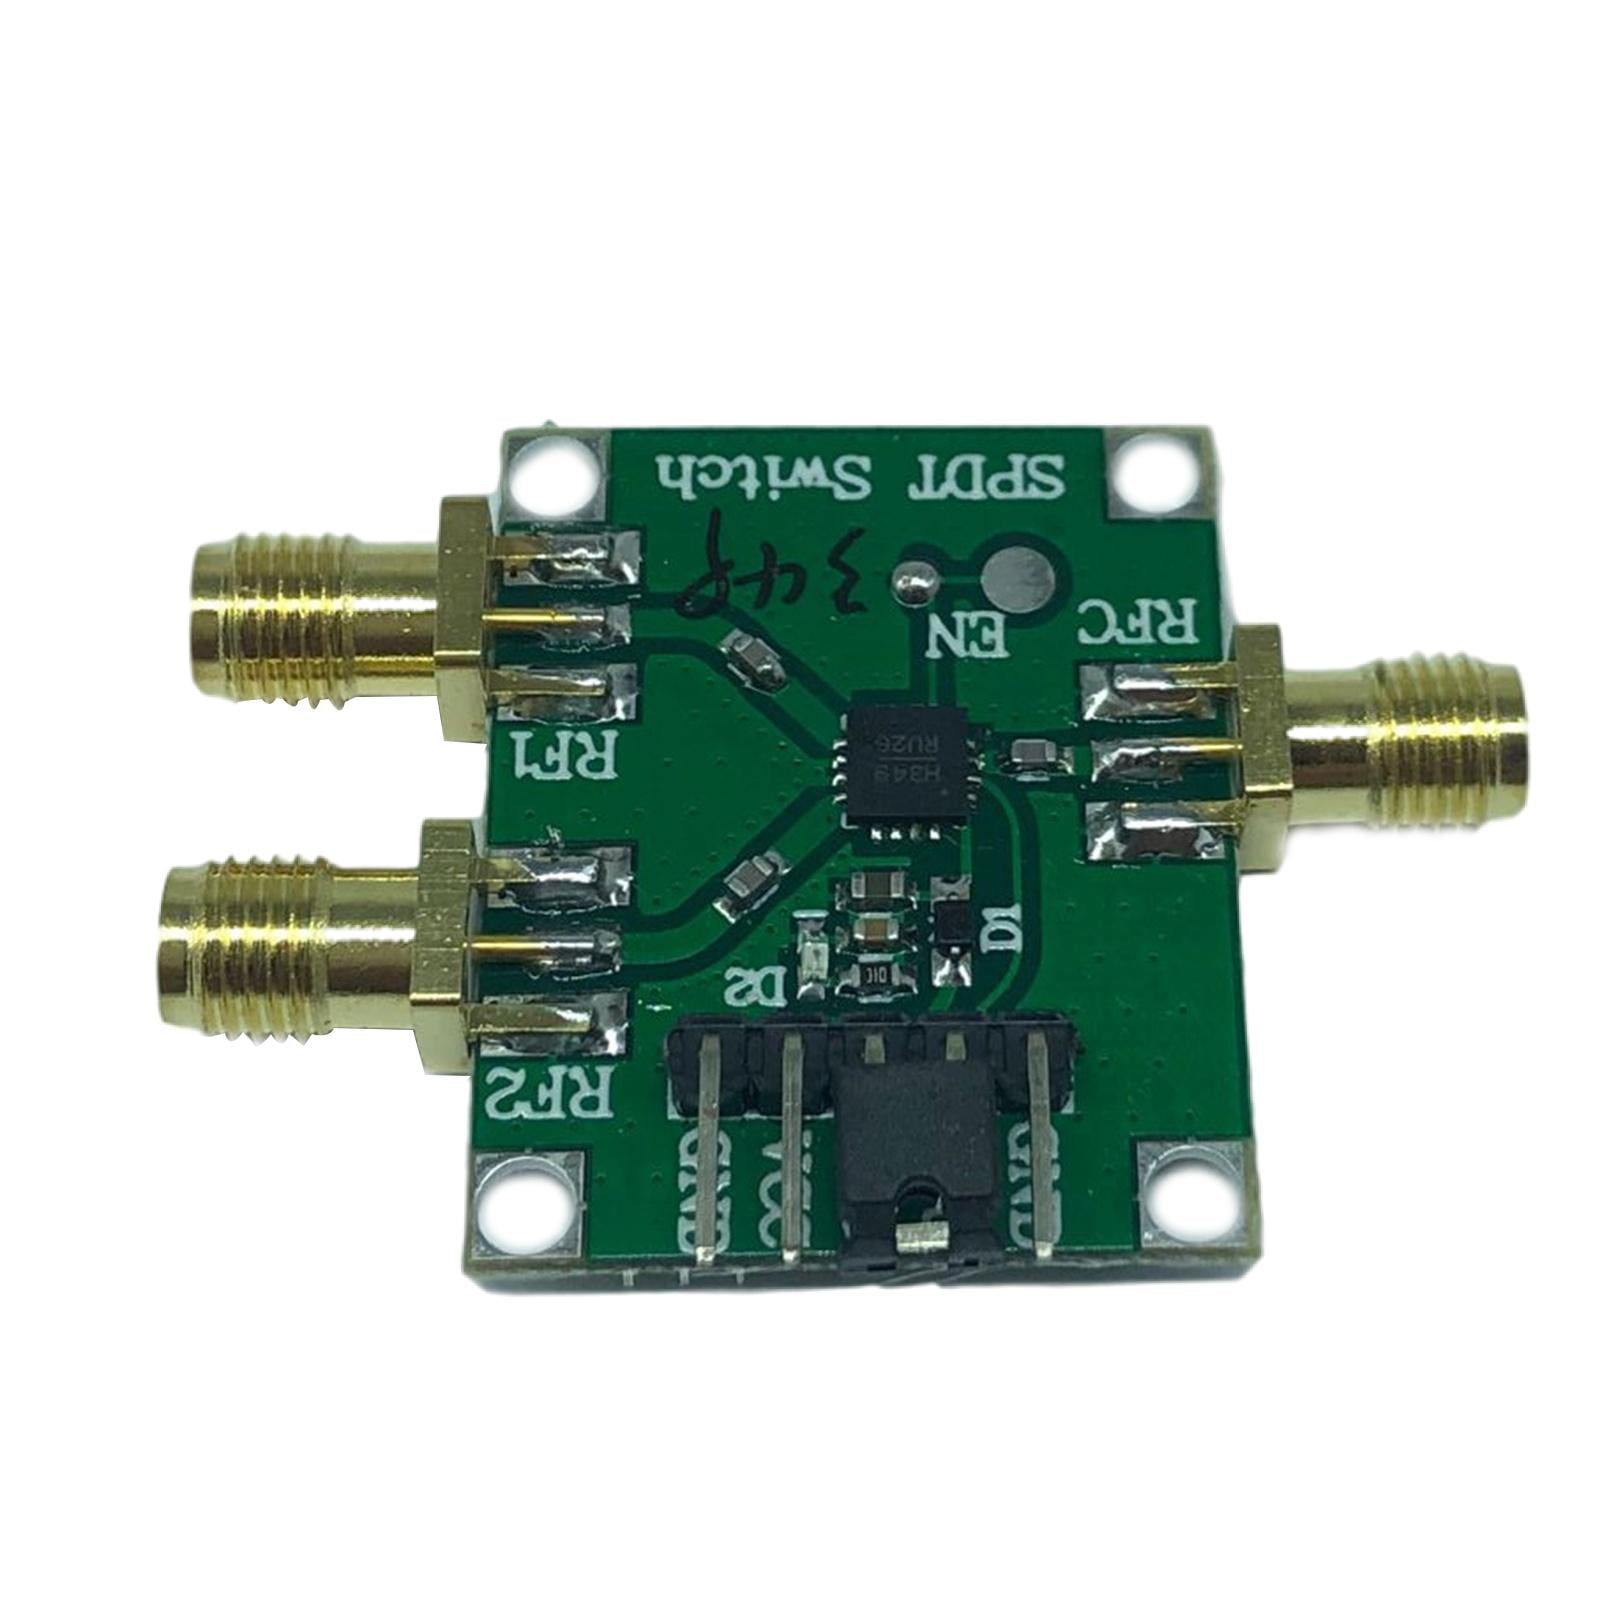 HMC849 RF Switch Module 6GHz Single Pole Double Throw Board w/ Bandwidth tpys 